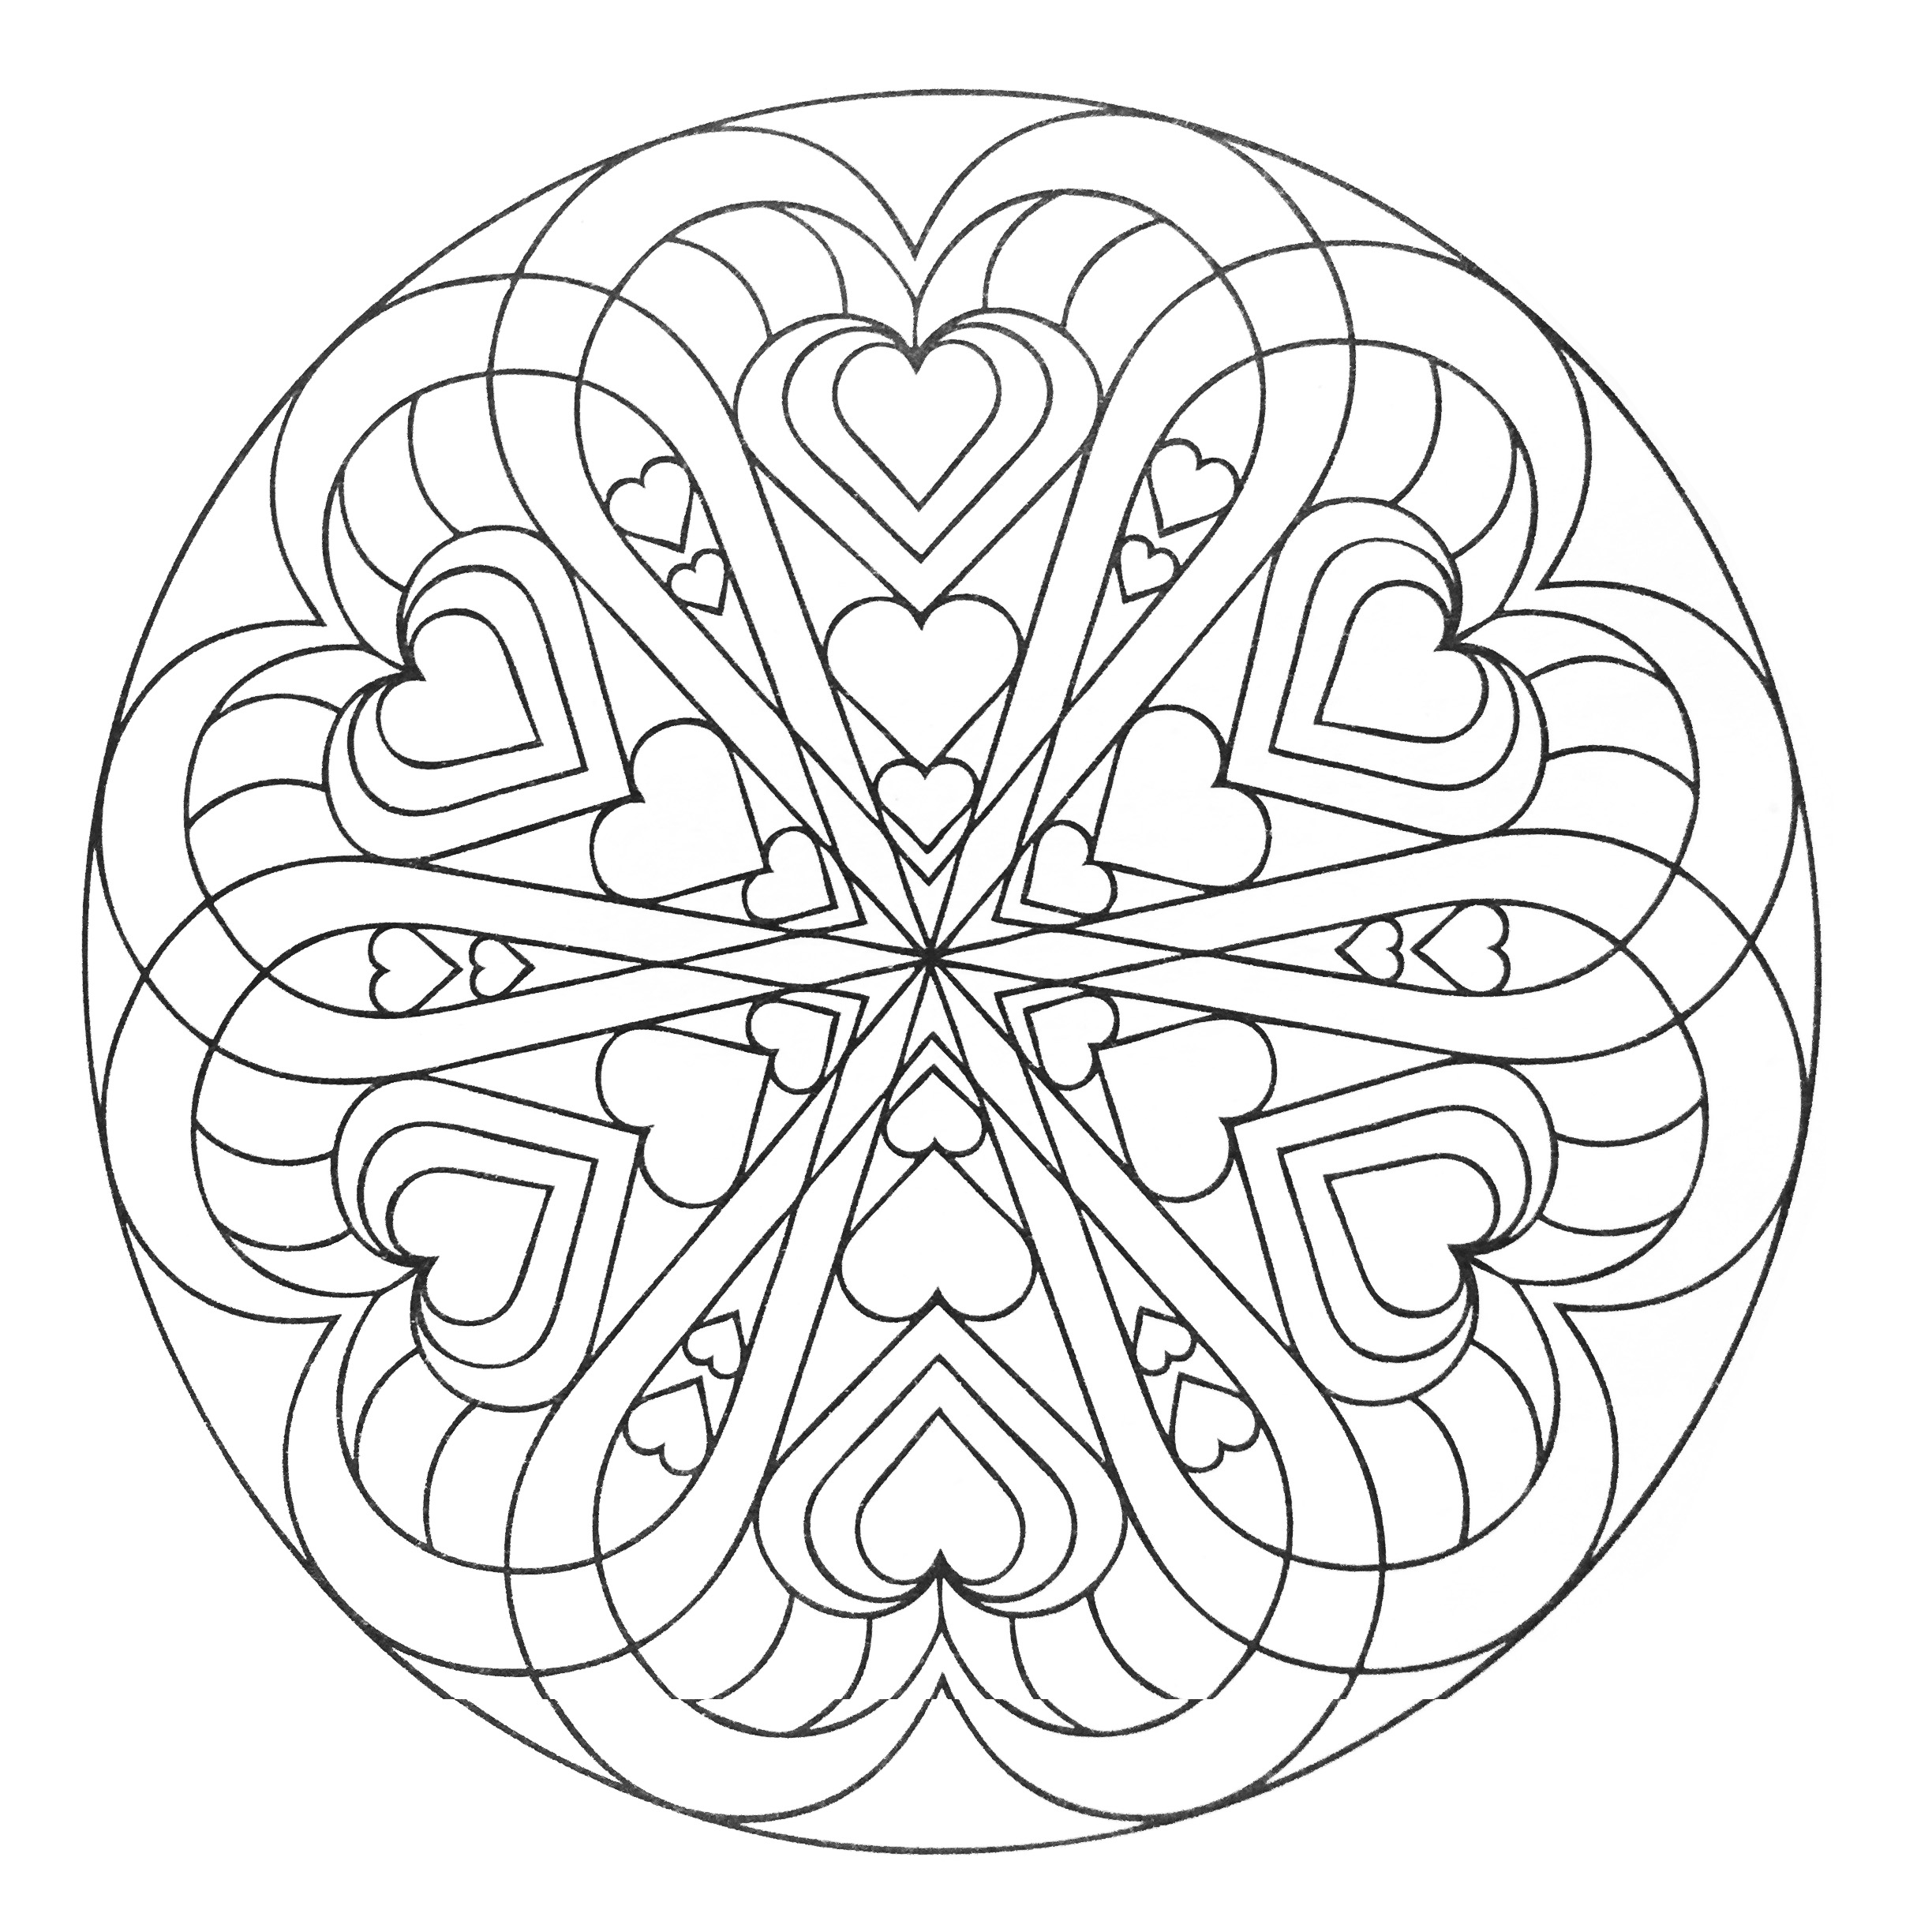 Mandala full of hearts